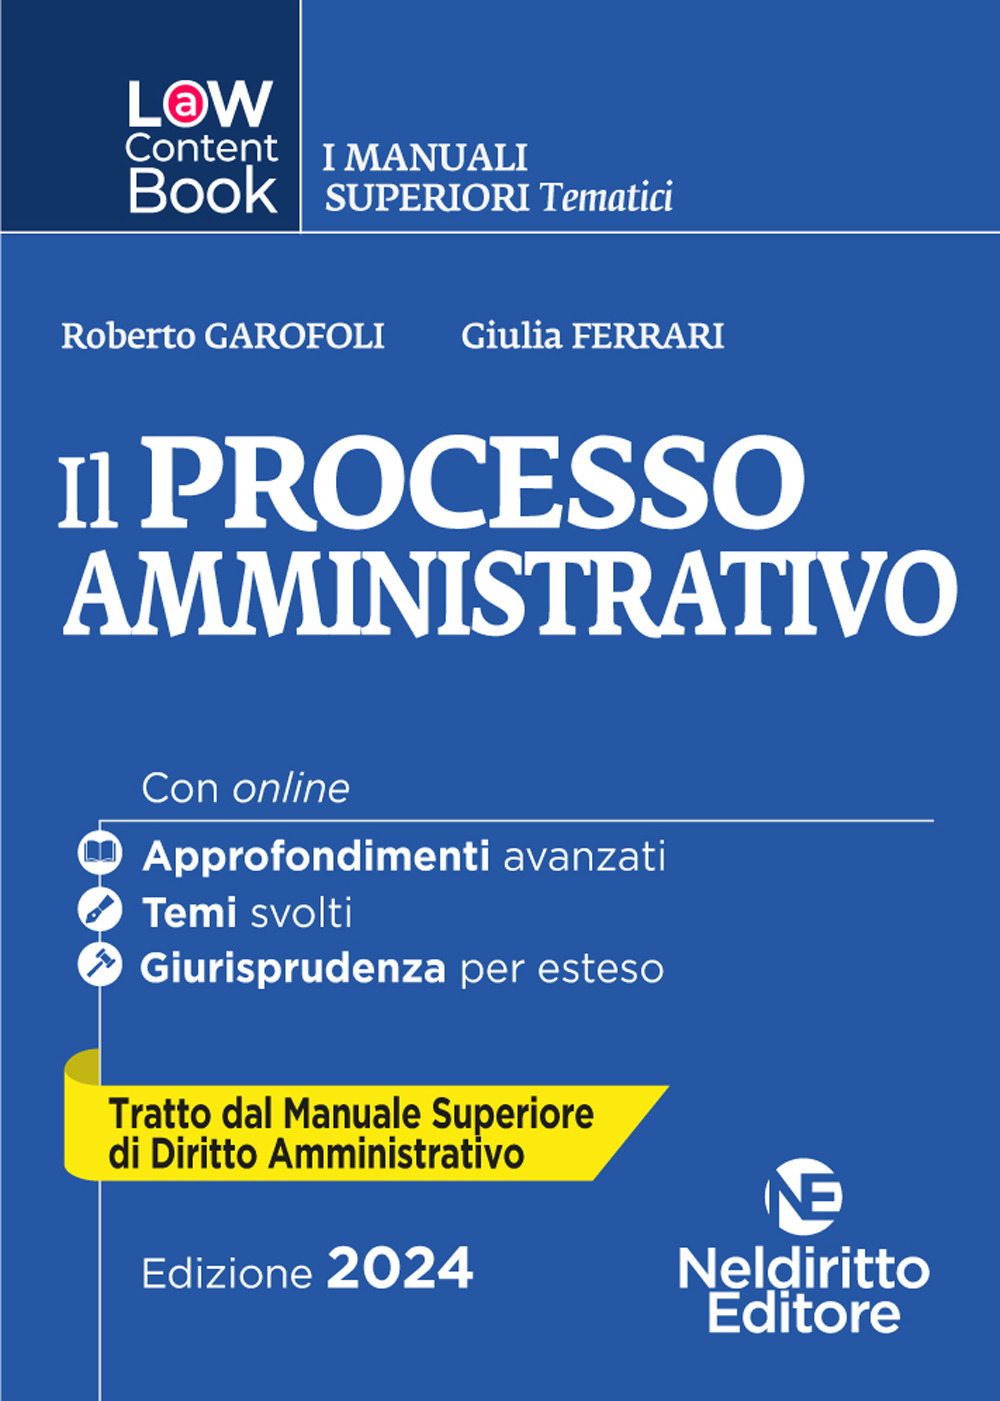 L(a)w content book. I manuali superiori tematici. Il processo amministrativo. Per concorso in Magistratura. Vol. 5